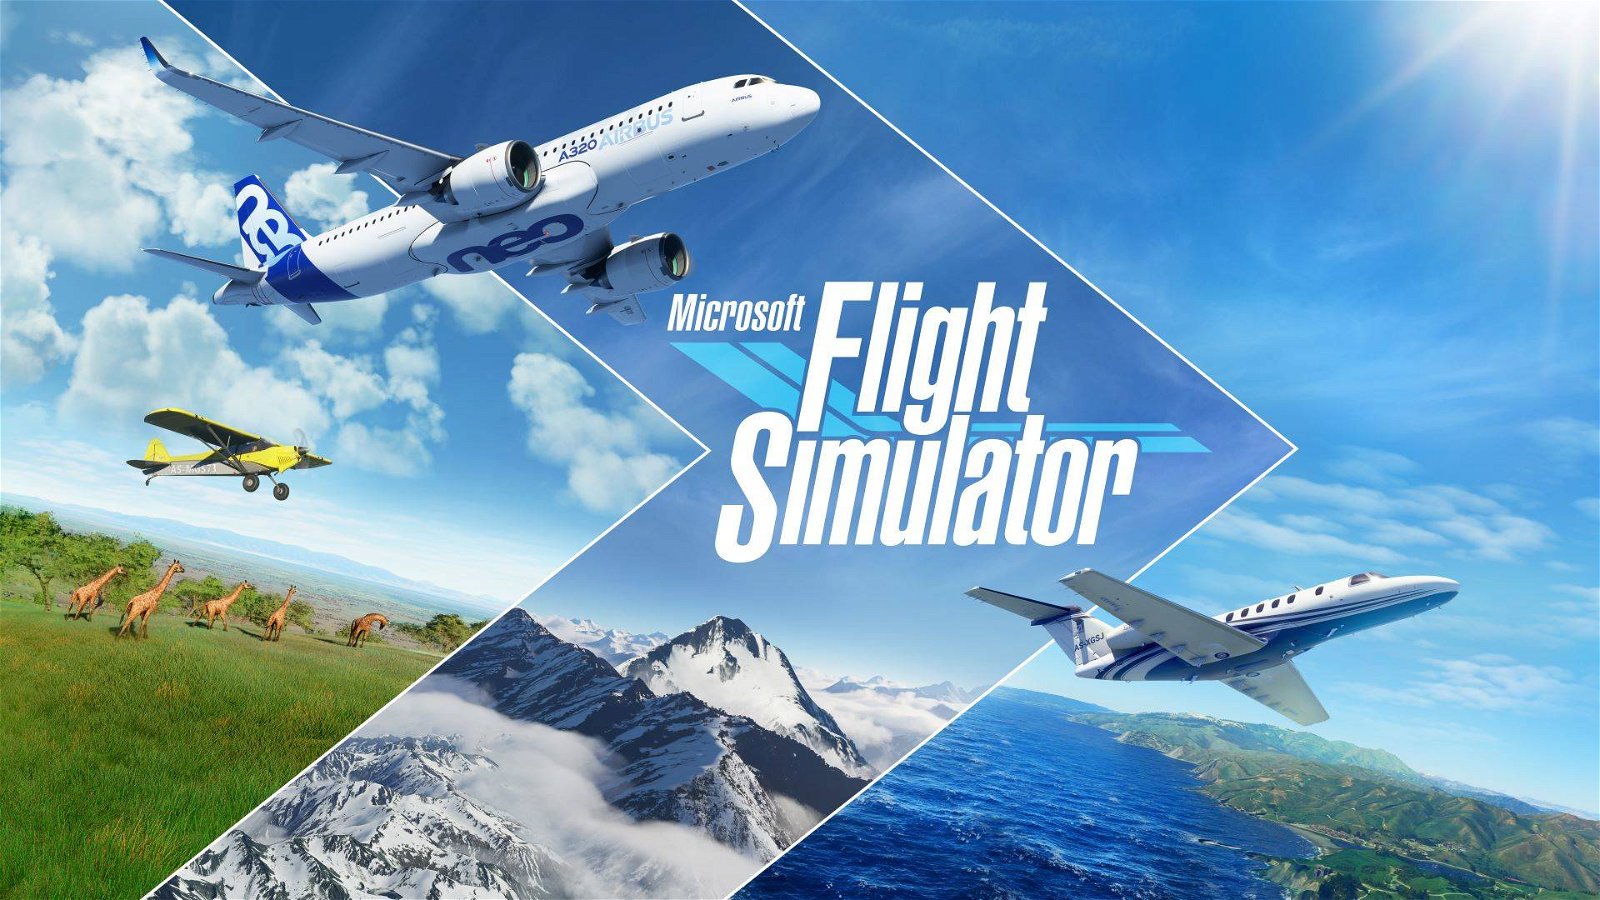 Immagine di Microsoft Flight Simulator, un'edizione fisica su PC con 10 dischi!